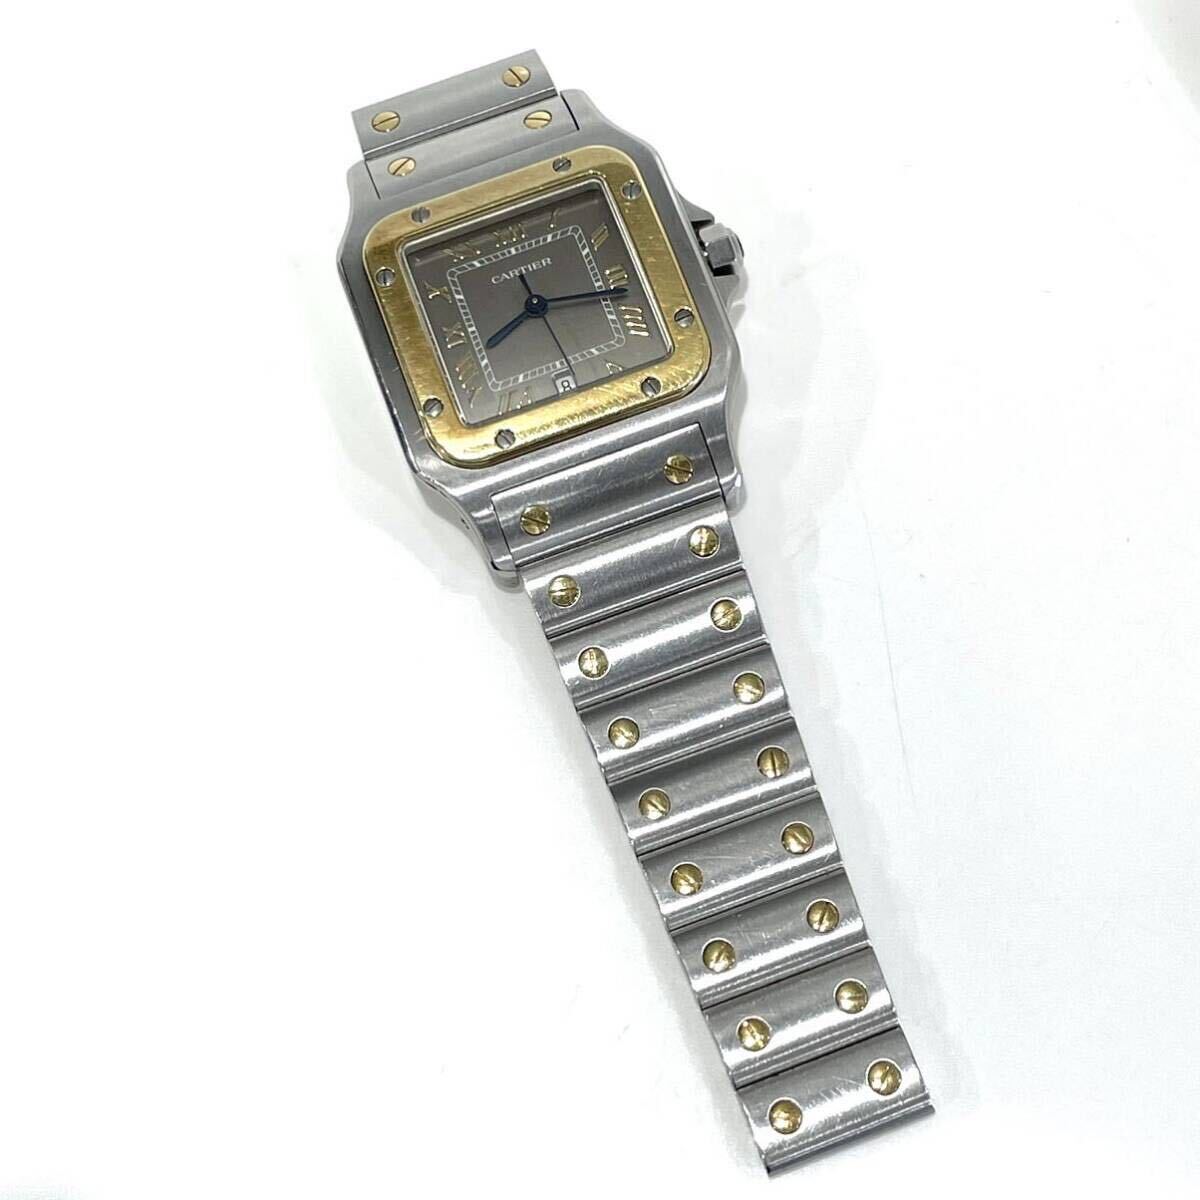 Cartier Cartier sun tosgaru.LM W20030C4 1566 wristwatch quartz SS/YG gray face Date men's operation goods breath torn free shipping 